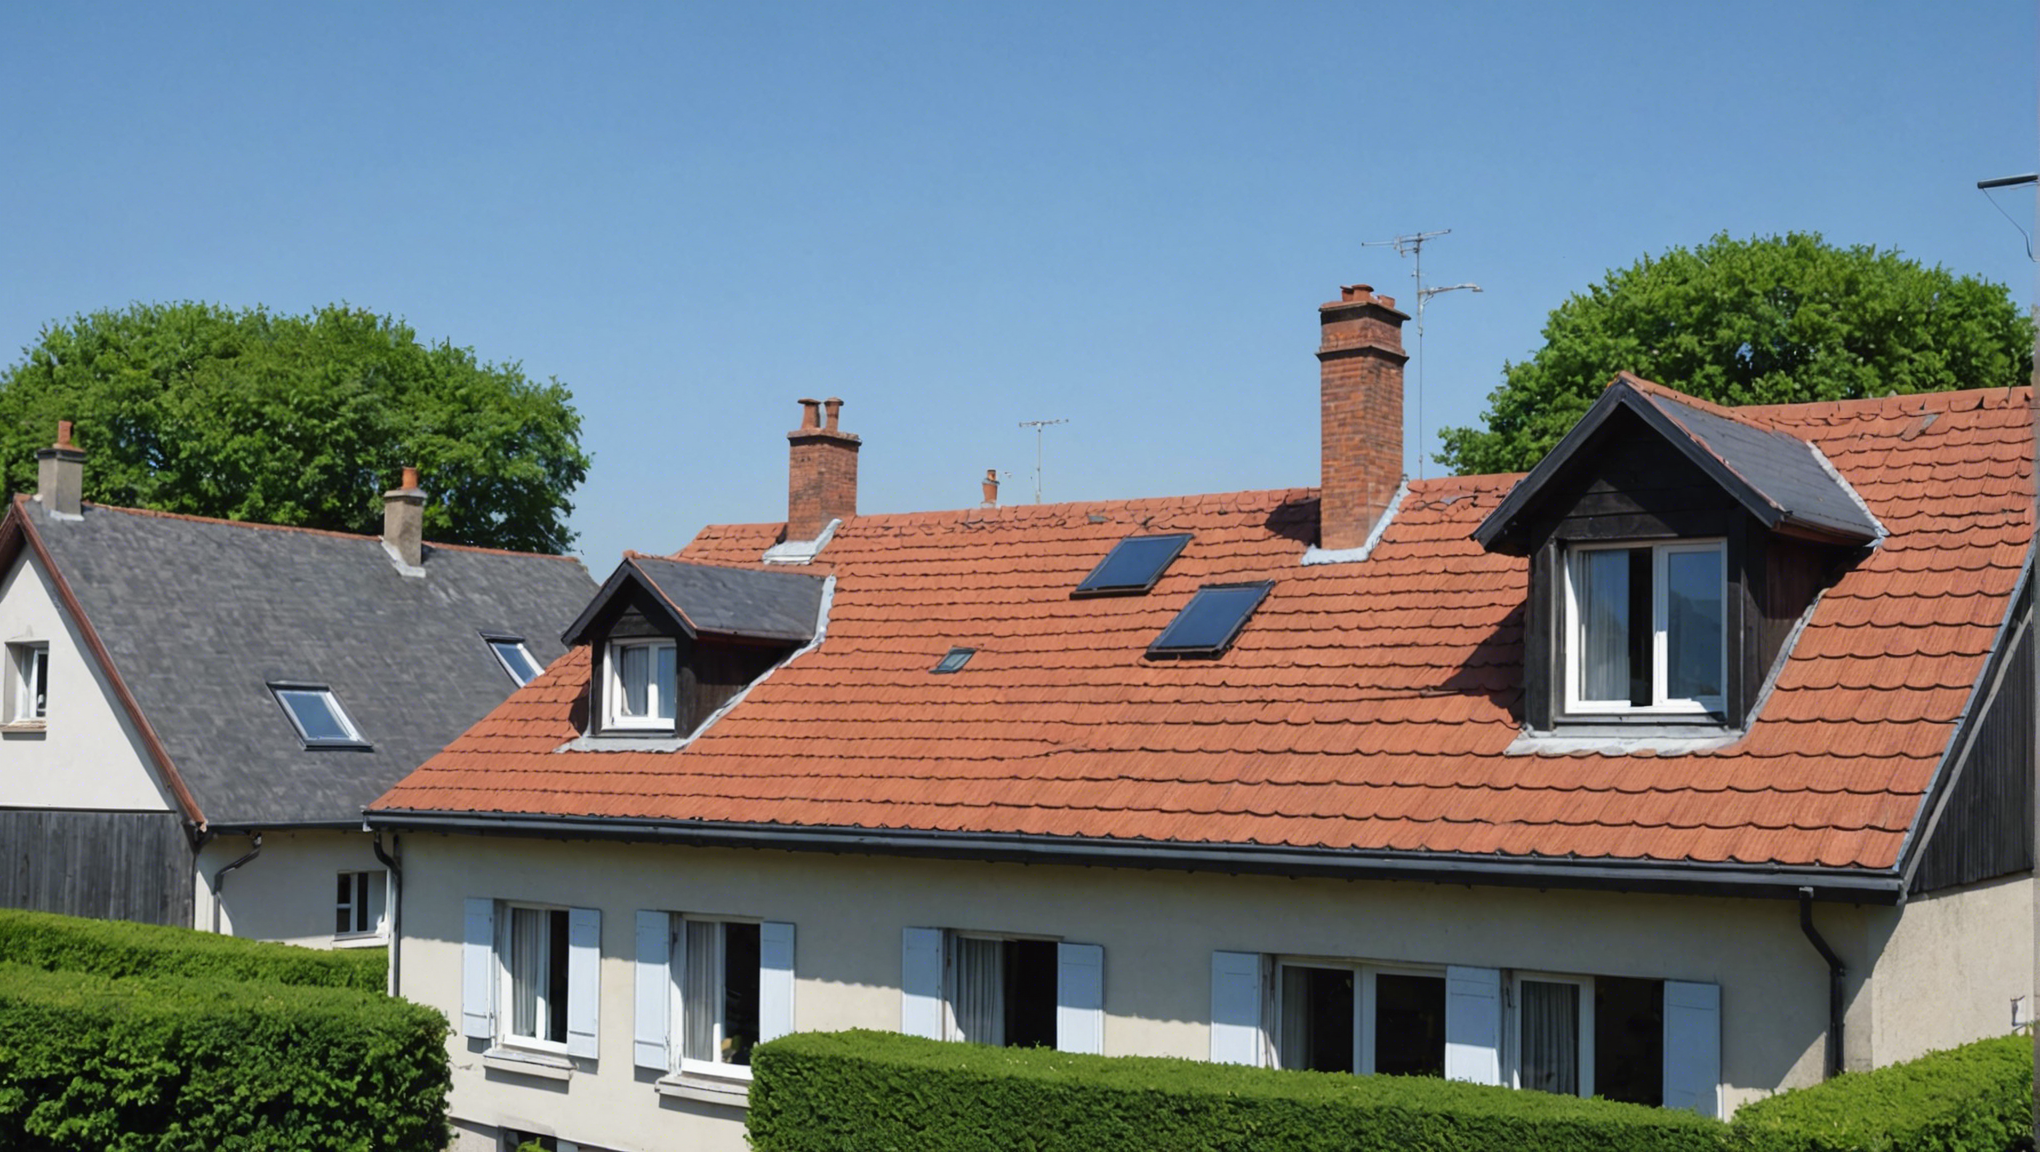 découvrez l'importance de l'entretien de l'isolation de votre toiture et ses méthodes dans cet article. améliorez le confort de votre maison et réduisez vos factures énergétiques.